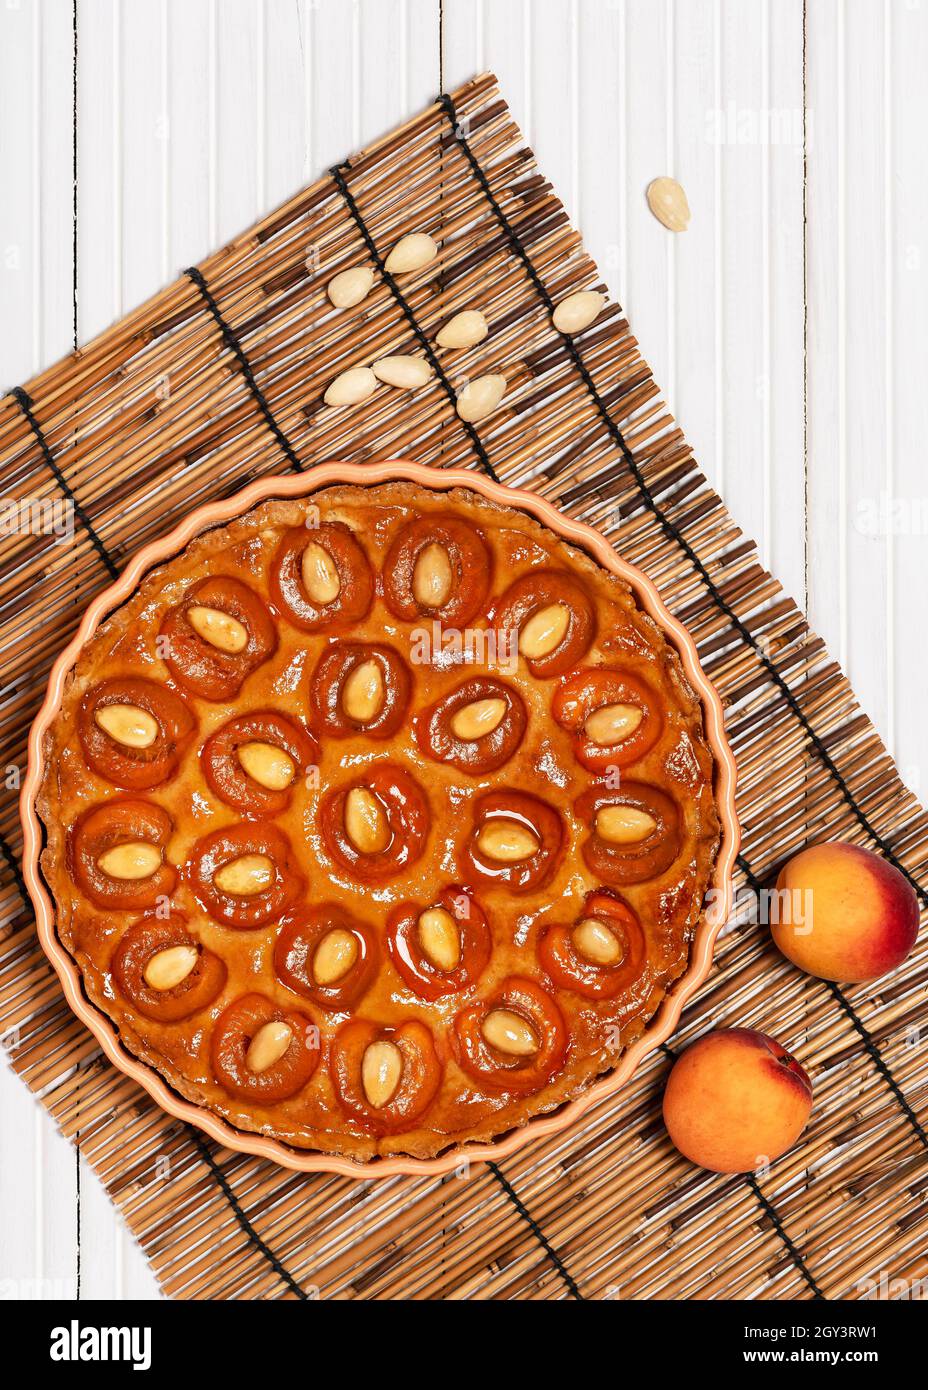 Vue de dessus de la délicieuse tarte aux abricots maison avec des noix d'amande.Concept de nourriture douce.Copier l'espace. Banque D'Images